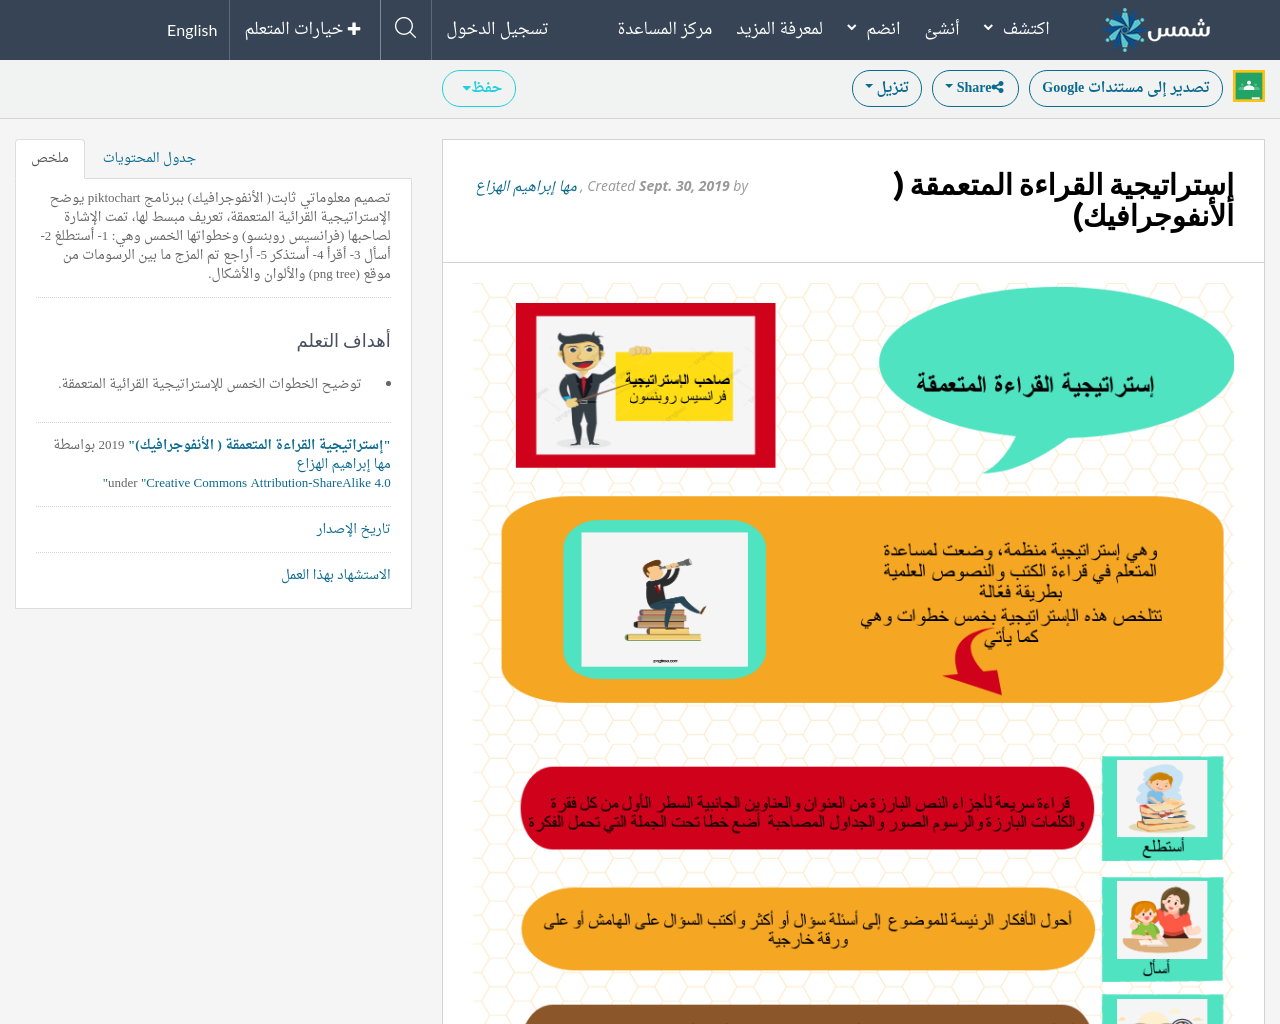 إستراتيجيه القراءه المتعمقه - الأنفوجرافيك- | Shms - Saudi Oer Network